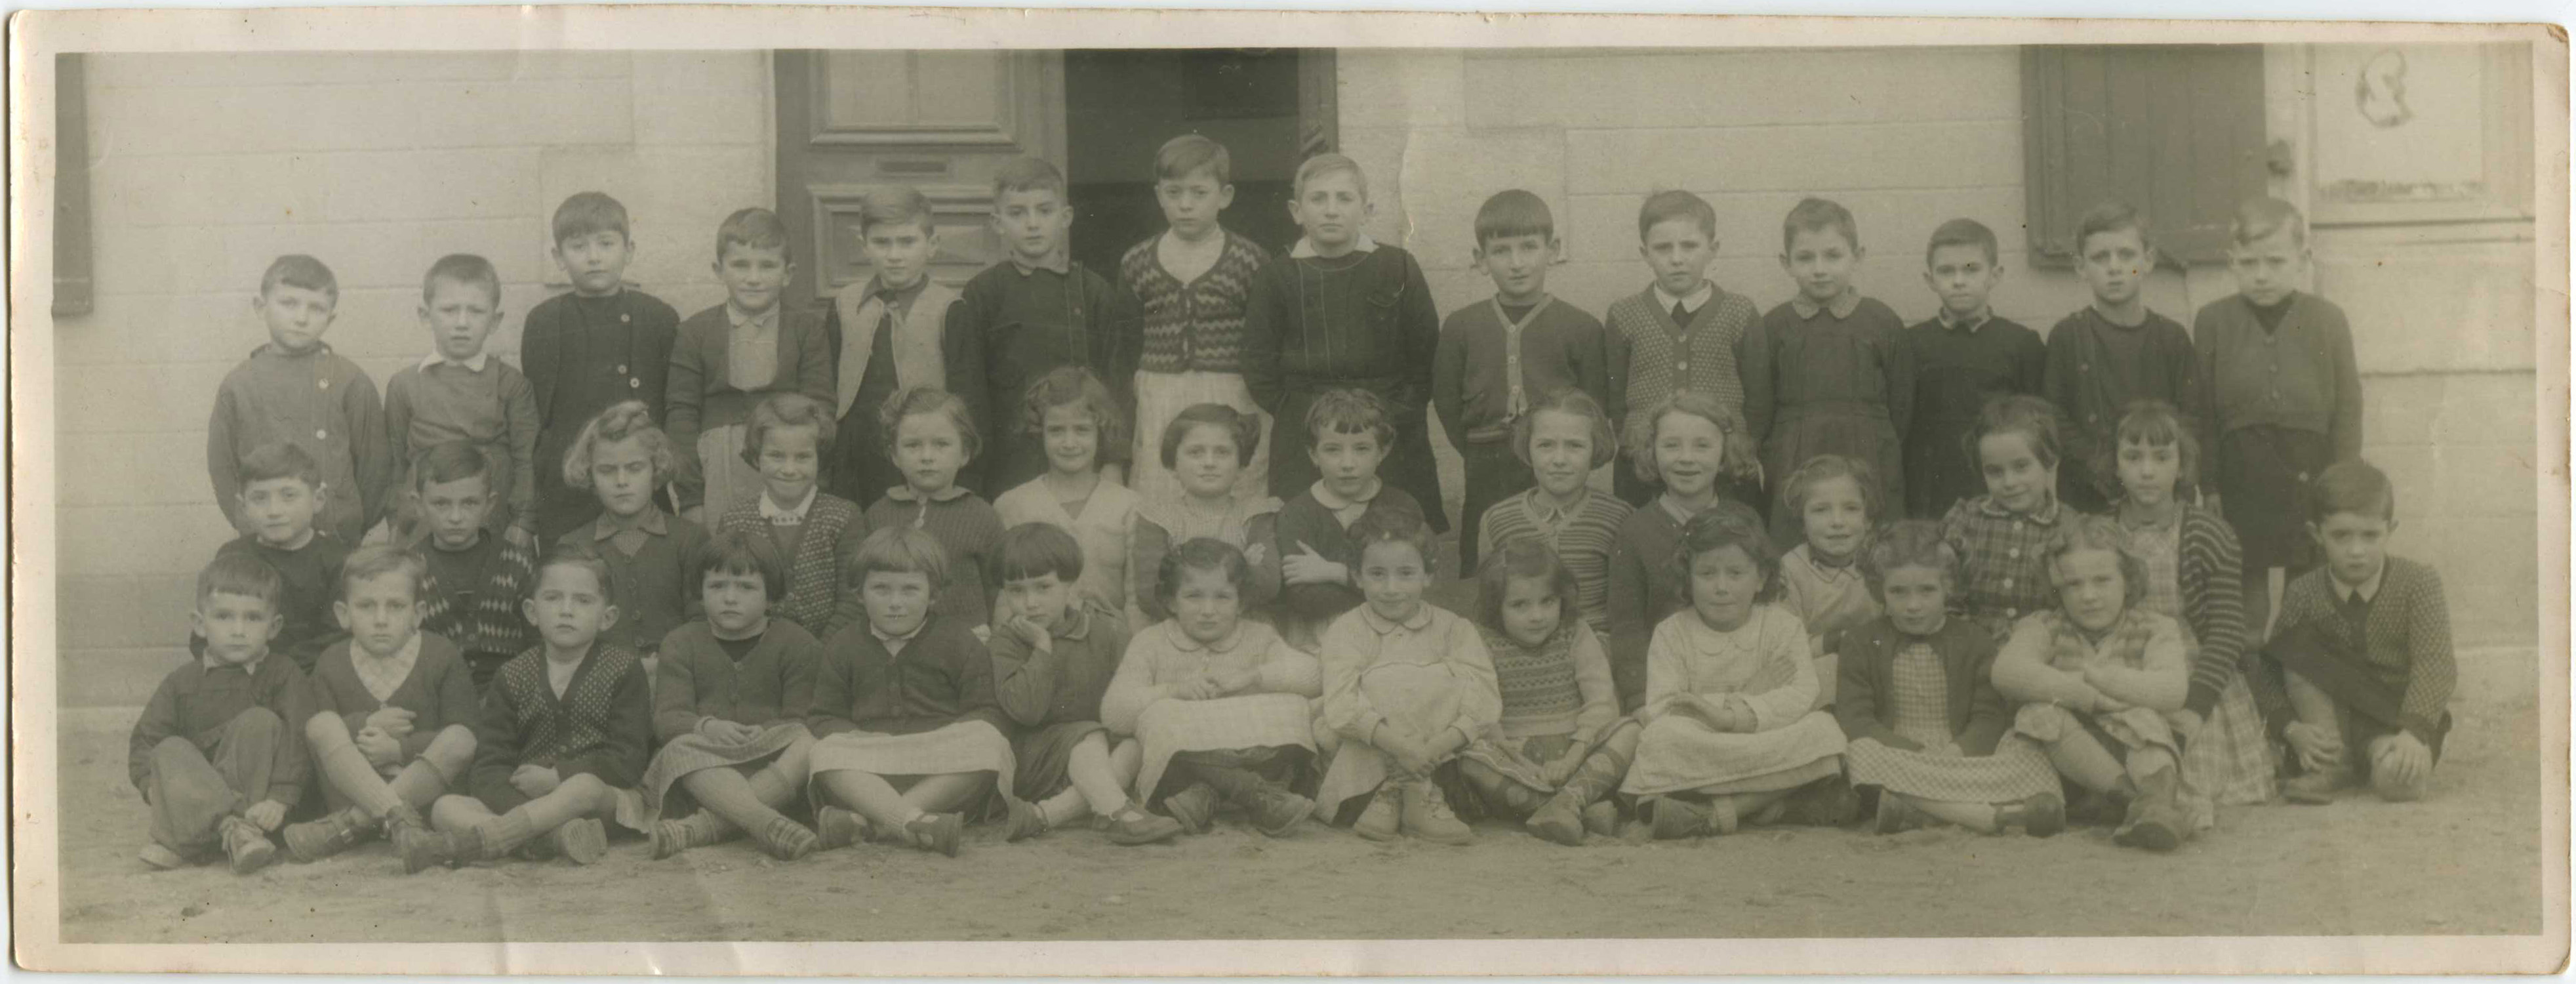 Téthieu - Ecole communale - photo de classe ( vers 1955 )